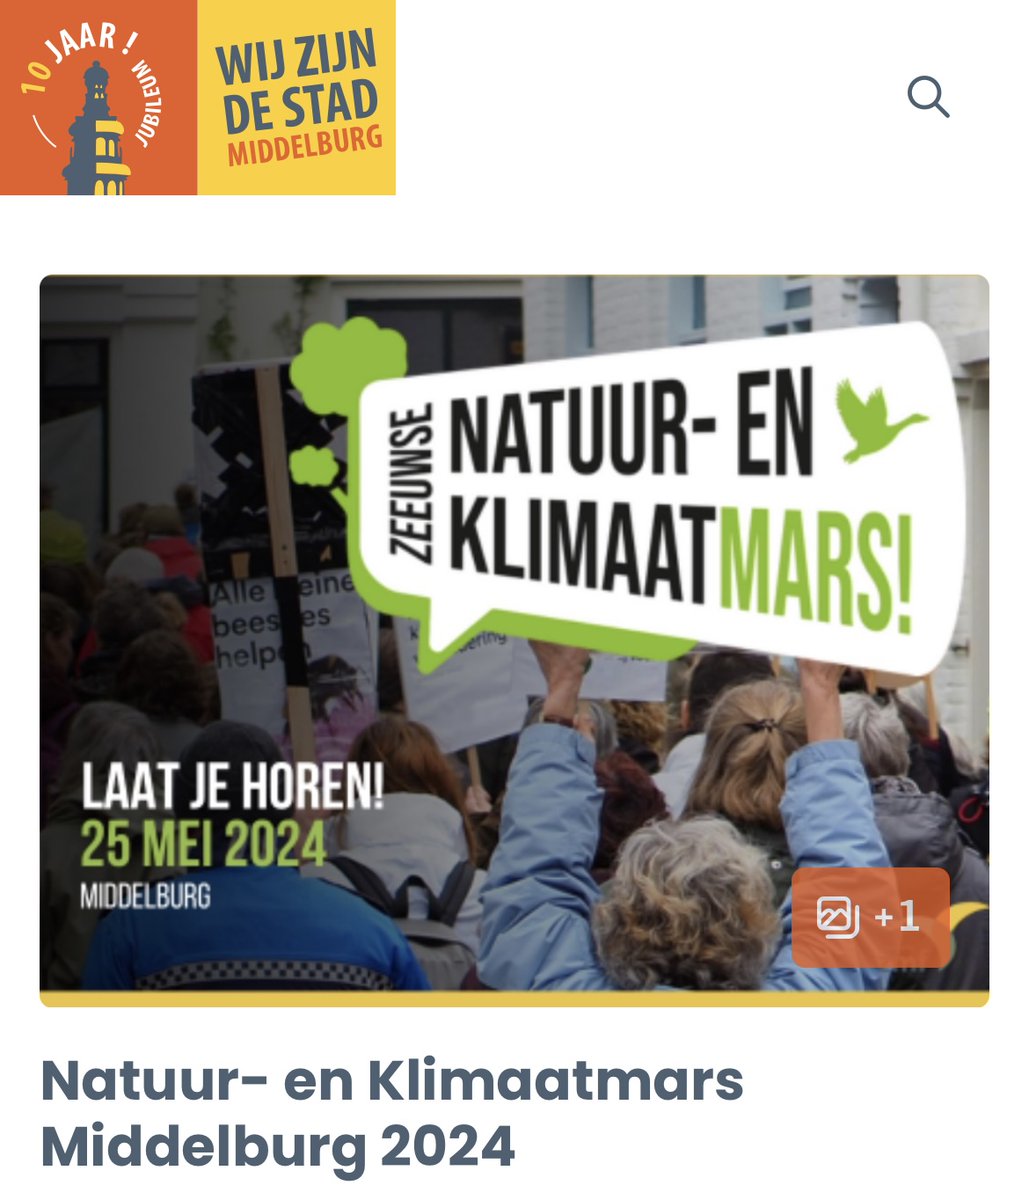 Zaterdag a.s. 25 mei lopen wij mee met de Zeeuwse natuur- en klimaatmars. Haak je in bij ons PvdD blok? We verzamelen om 14:00 uur op het Abdijplein in Middelburg. Na afloop hebben wij zelf ook nog een verrassing voor de deelnemers 😉😀wijzijndestad.com/agenda/natuur-…